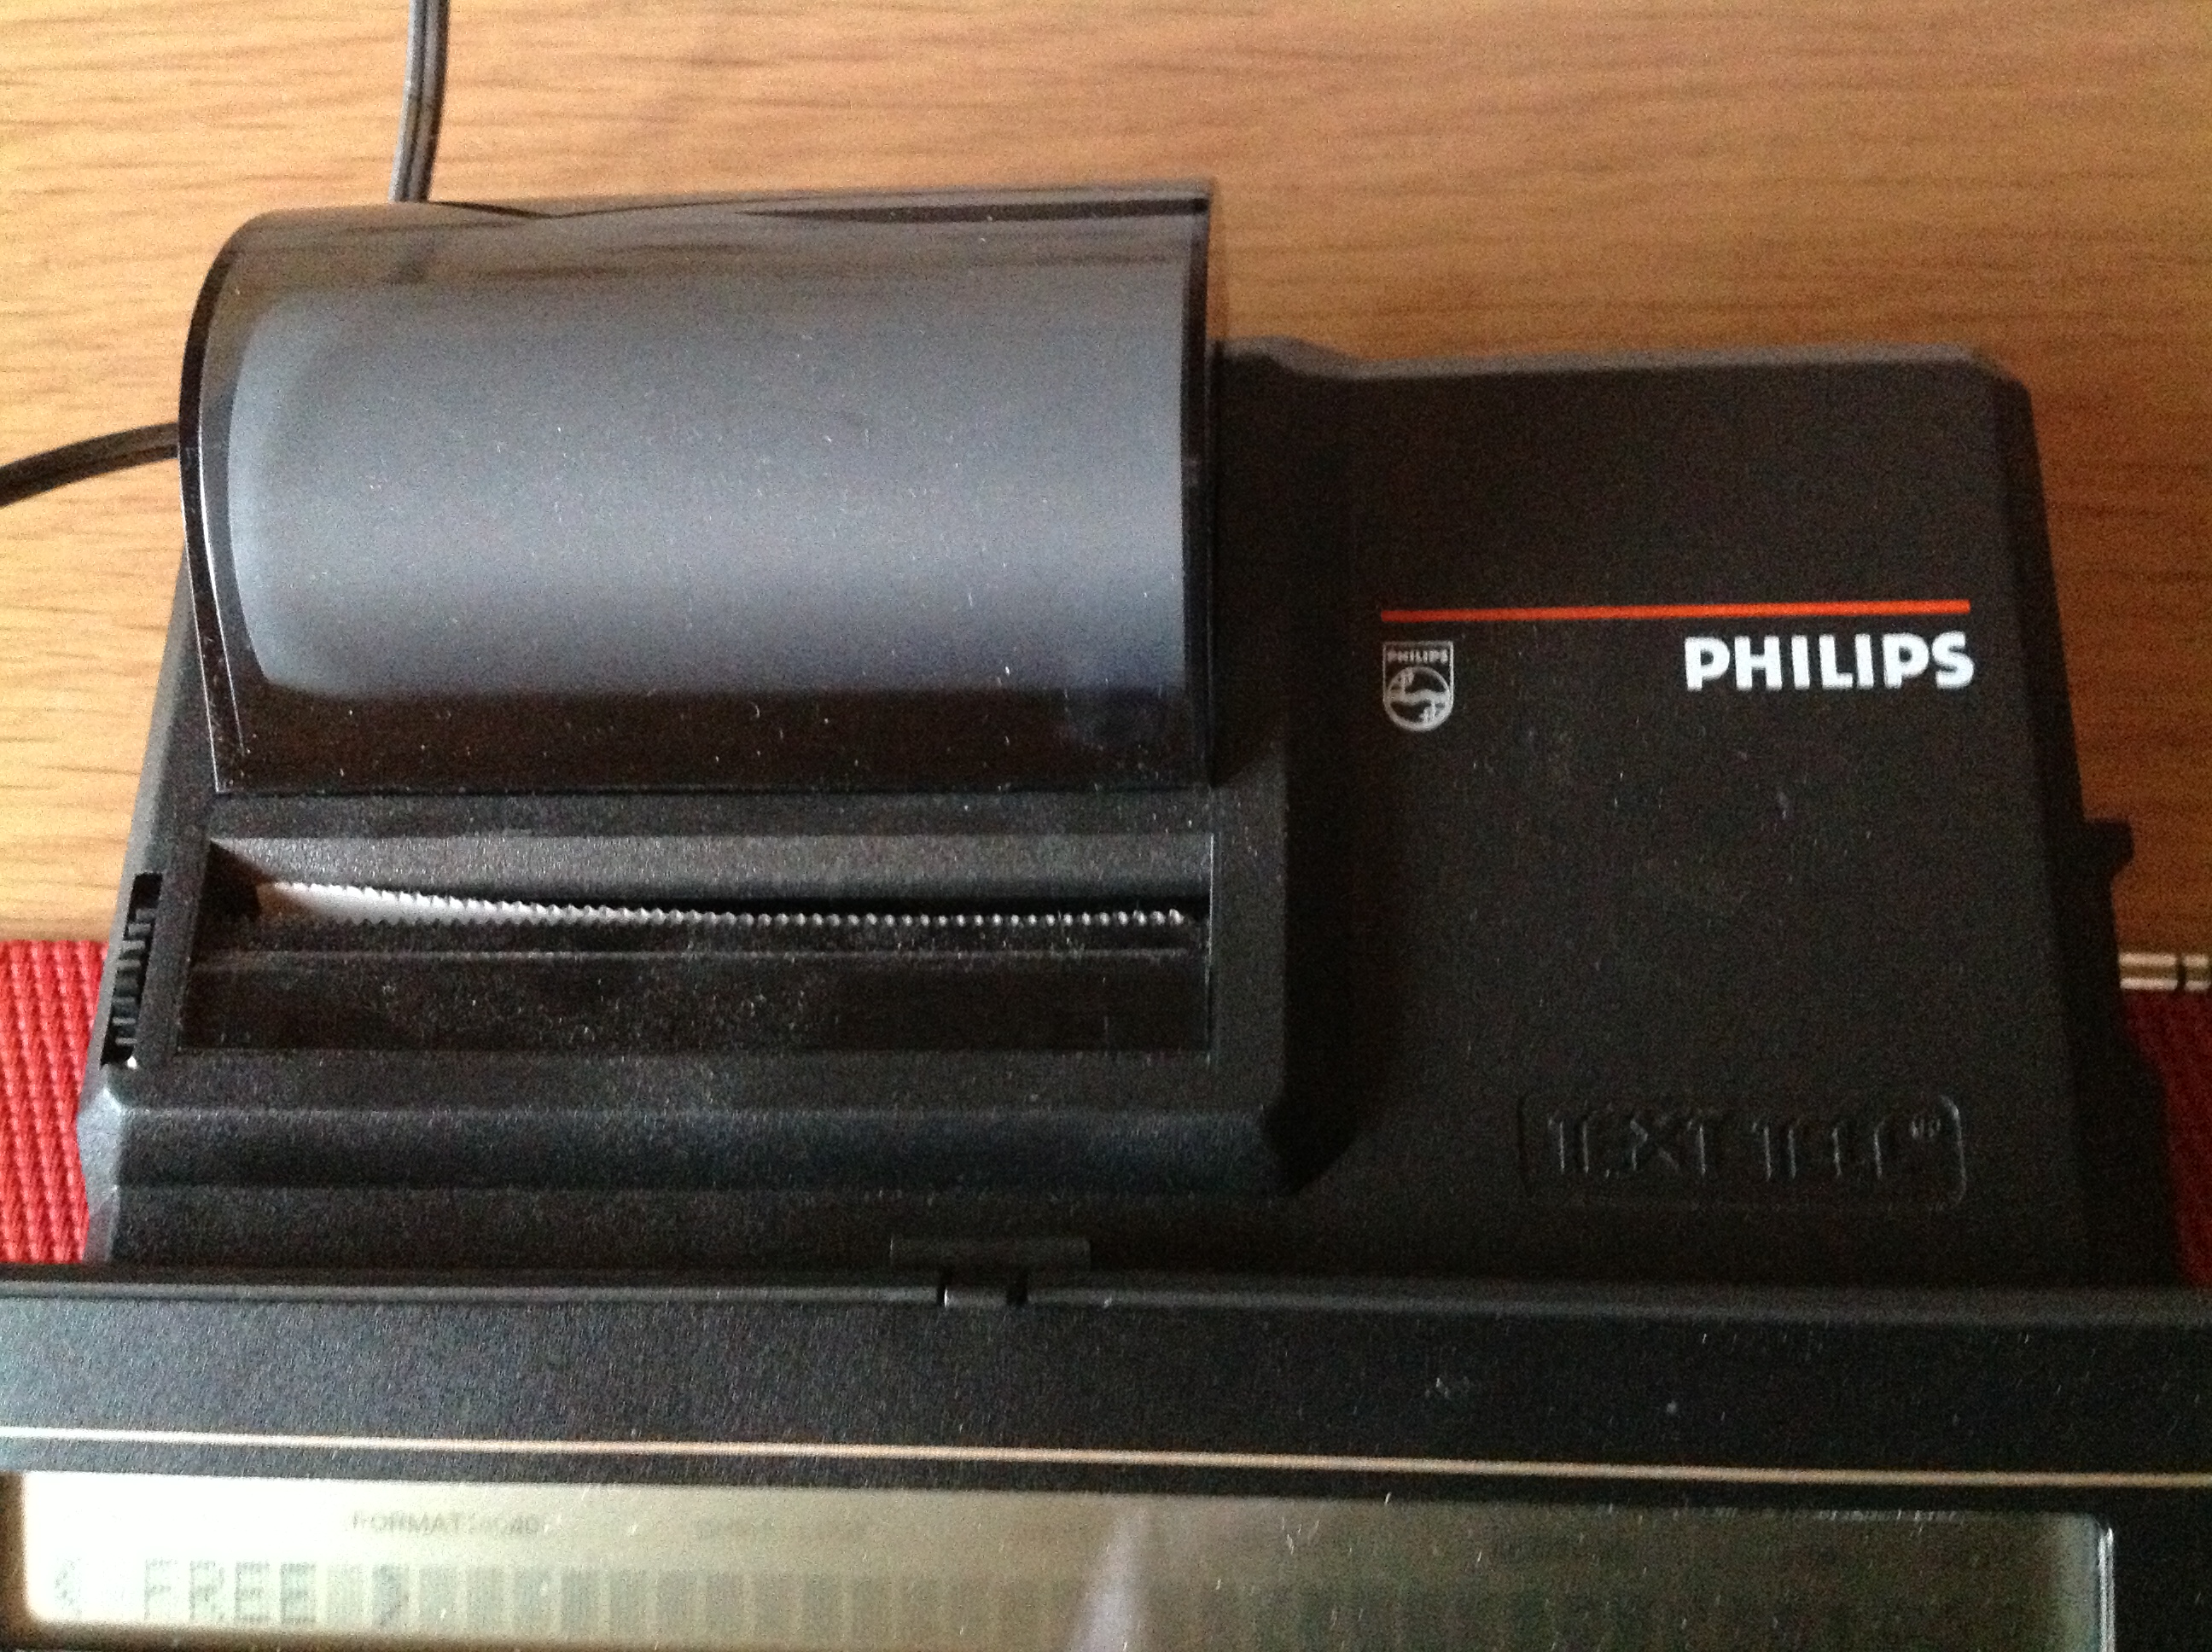 Fernschreiber Philips PX 1000 + Phillips PXP 40 Printer + 6 x Ersatzrollen + Bedienungsanleitungen